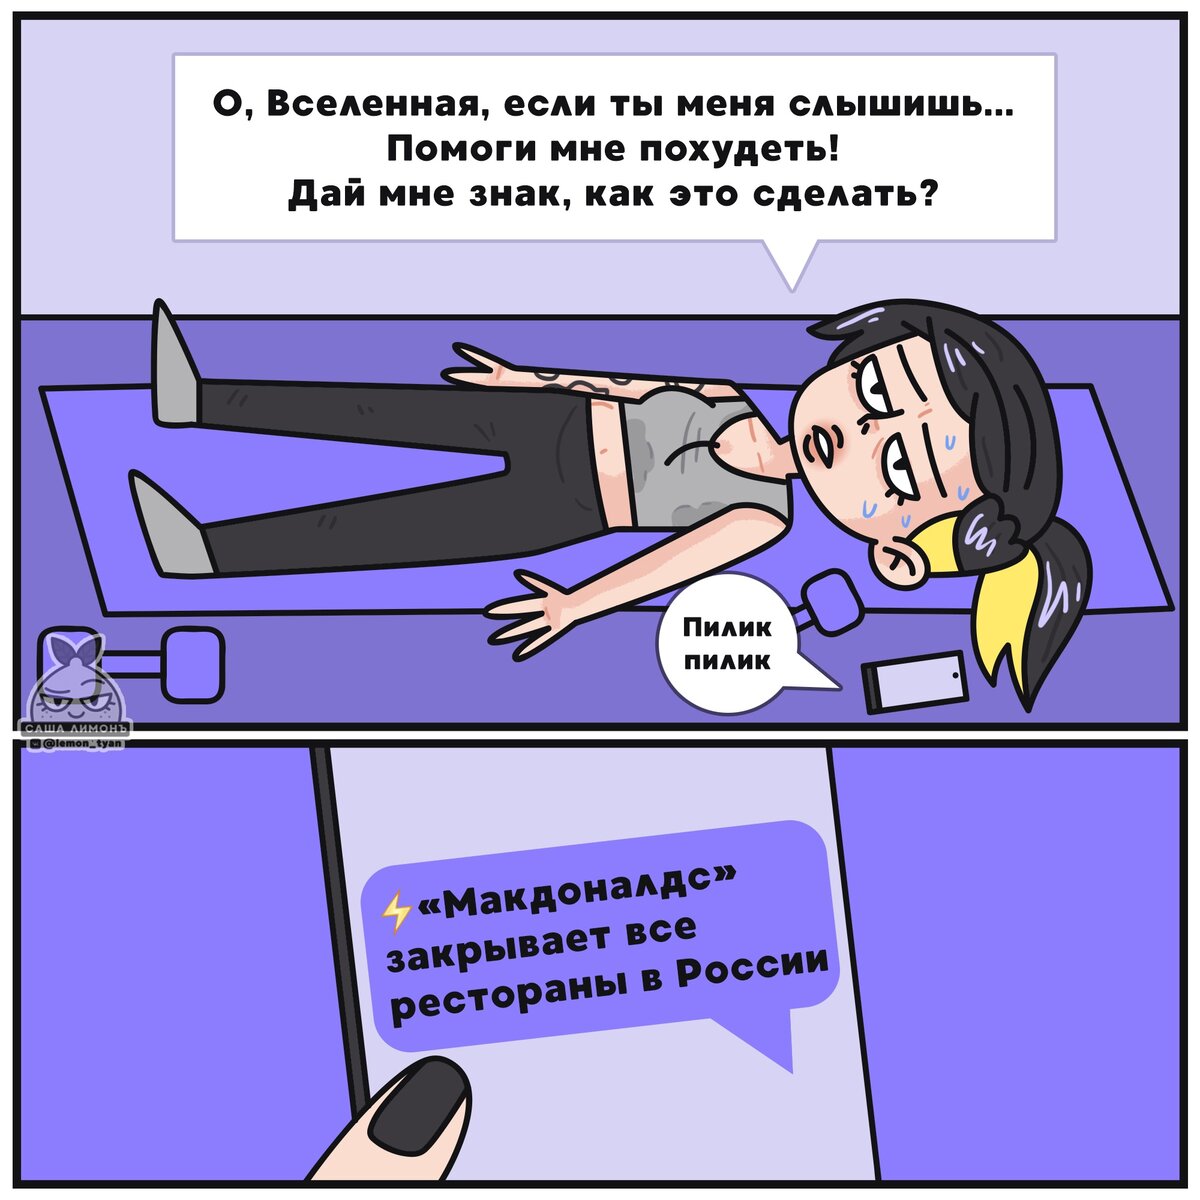 Комиксы ресторанов сети Макдоналдс в России, и карикатуры о закрытии.